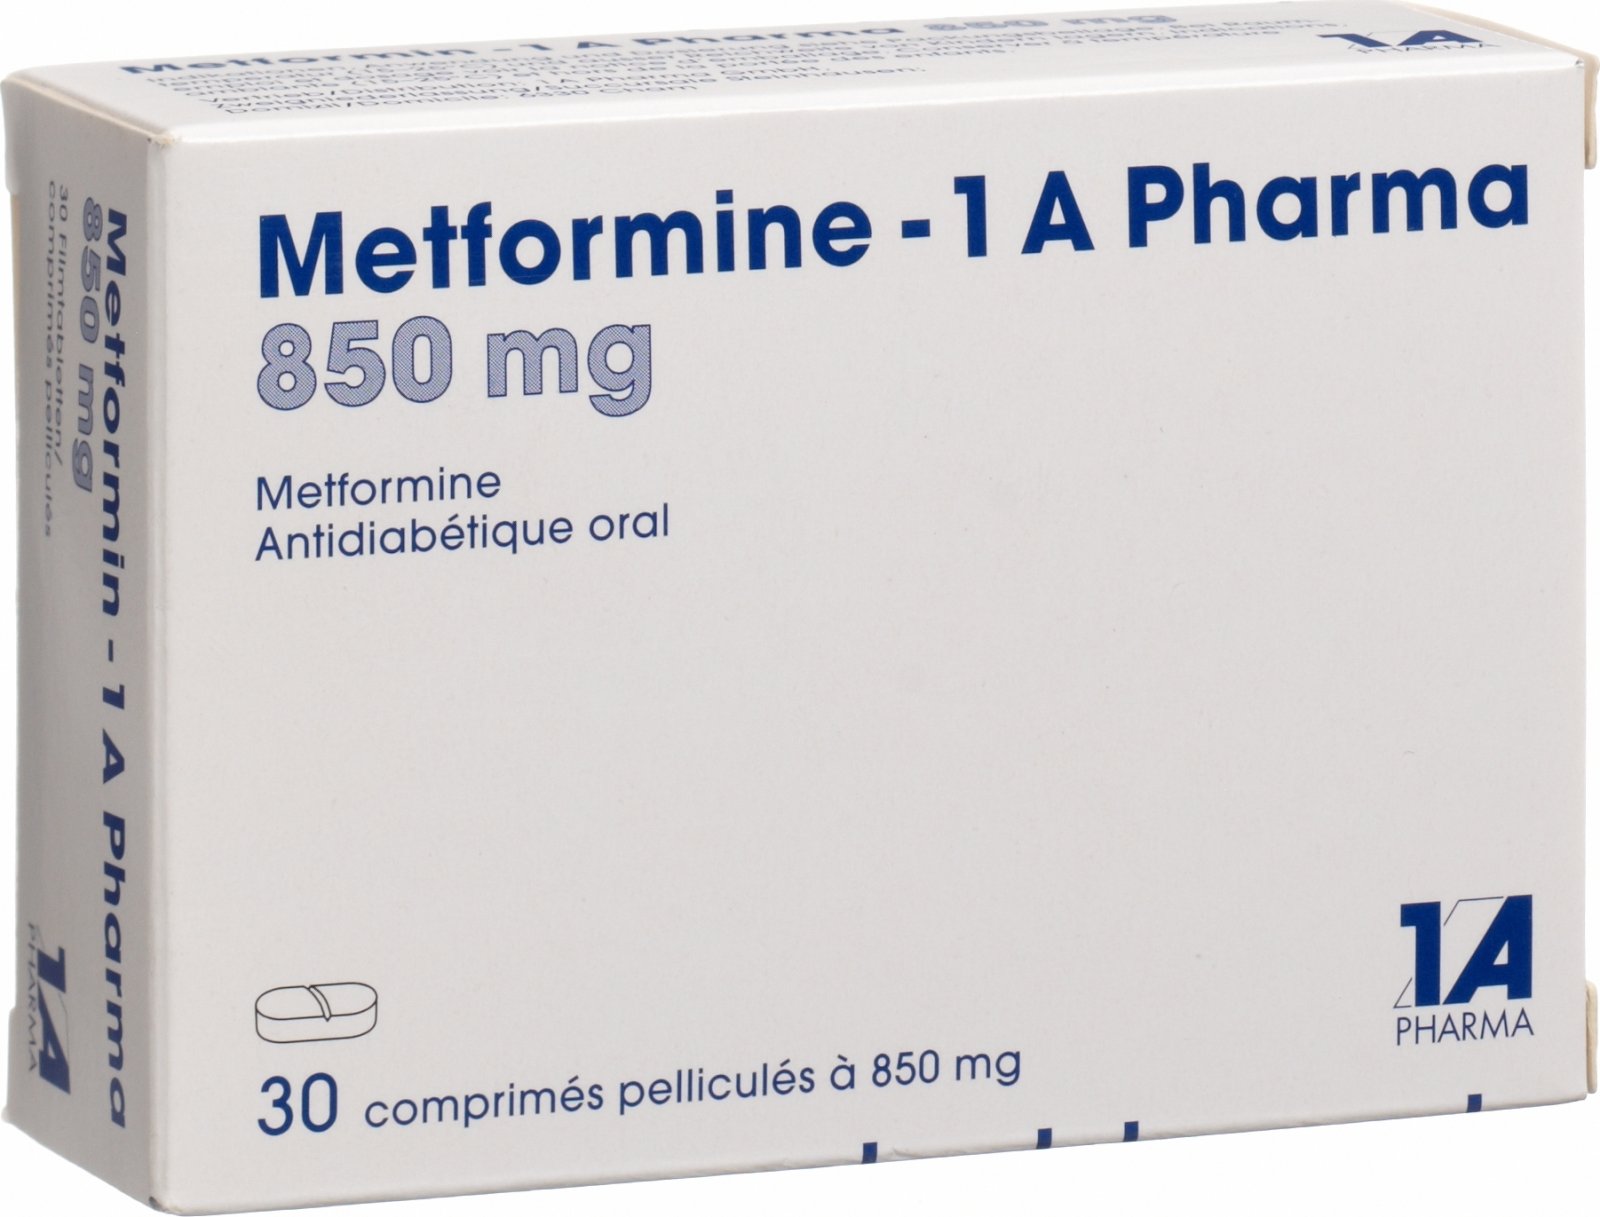 Метформин отзывы врачей и пациентов